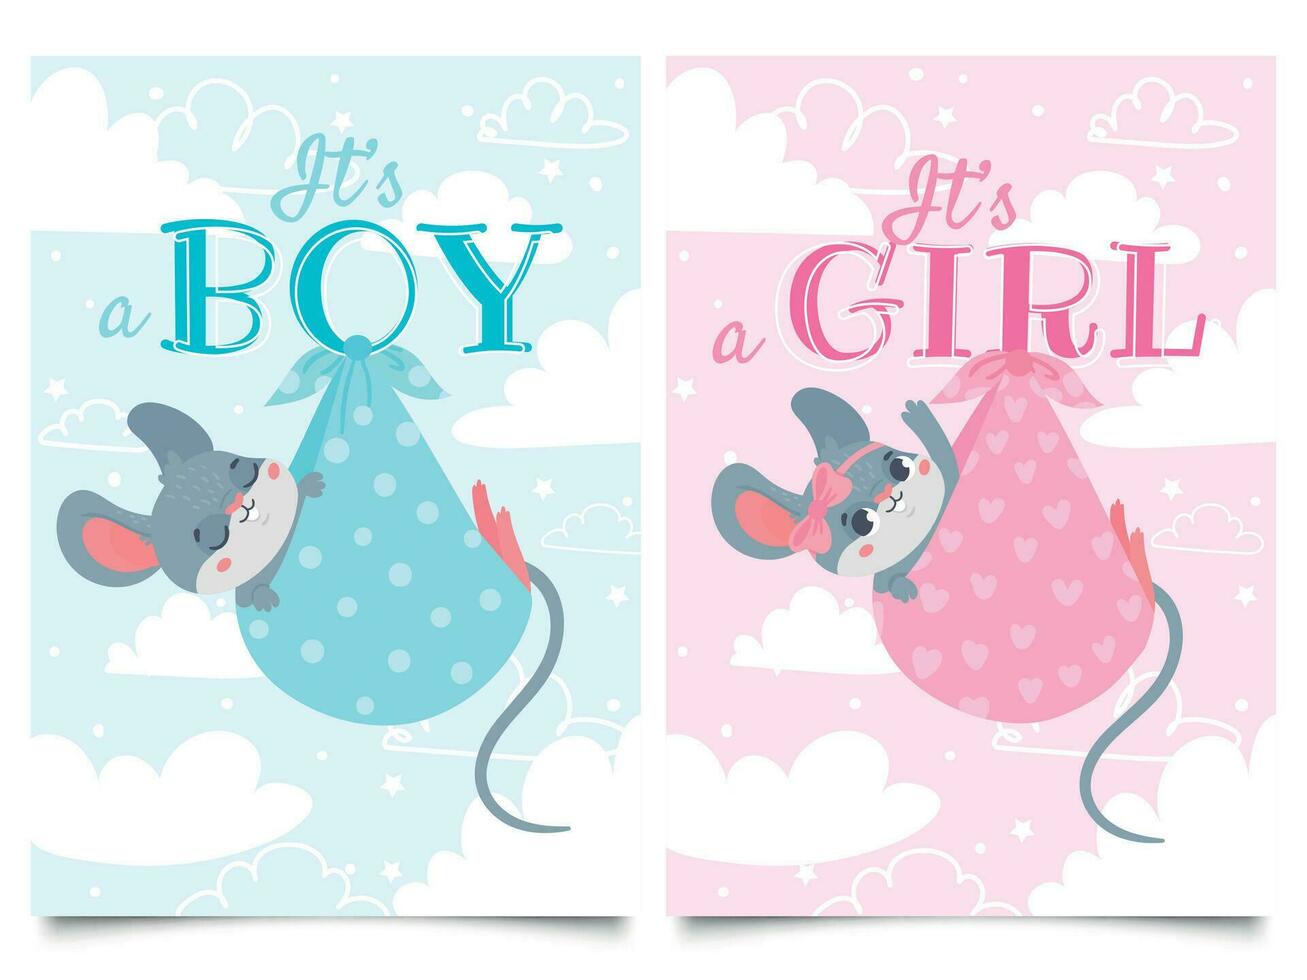 Está Garoto e menina cartões. bebê chuveiro rótulo com fofa rato, ratos crianças vetor desenho animado ilustração conjunto